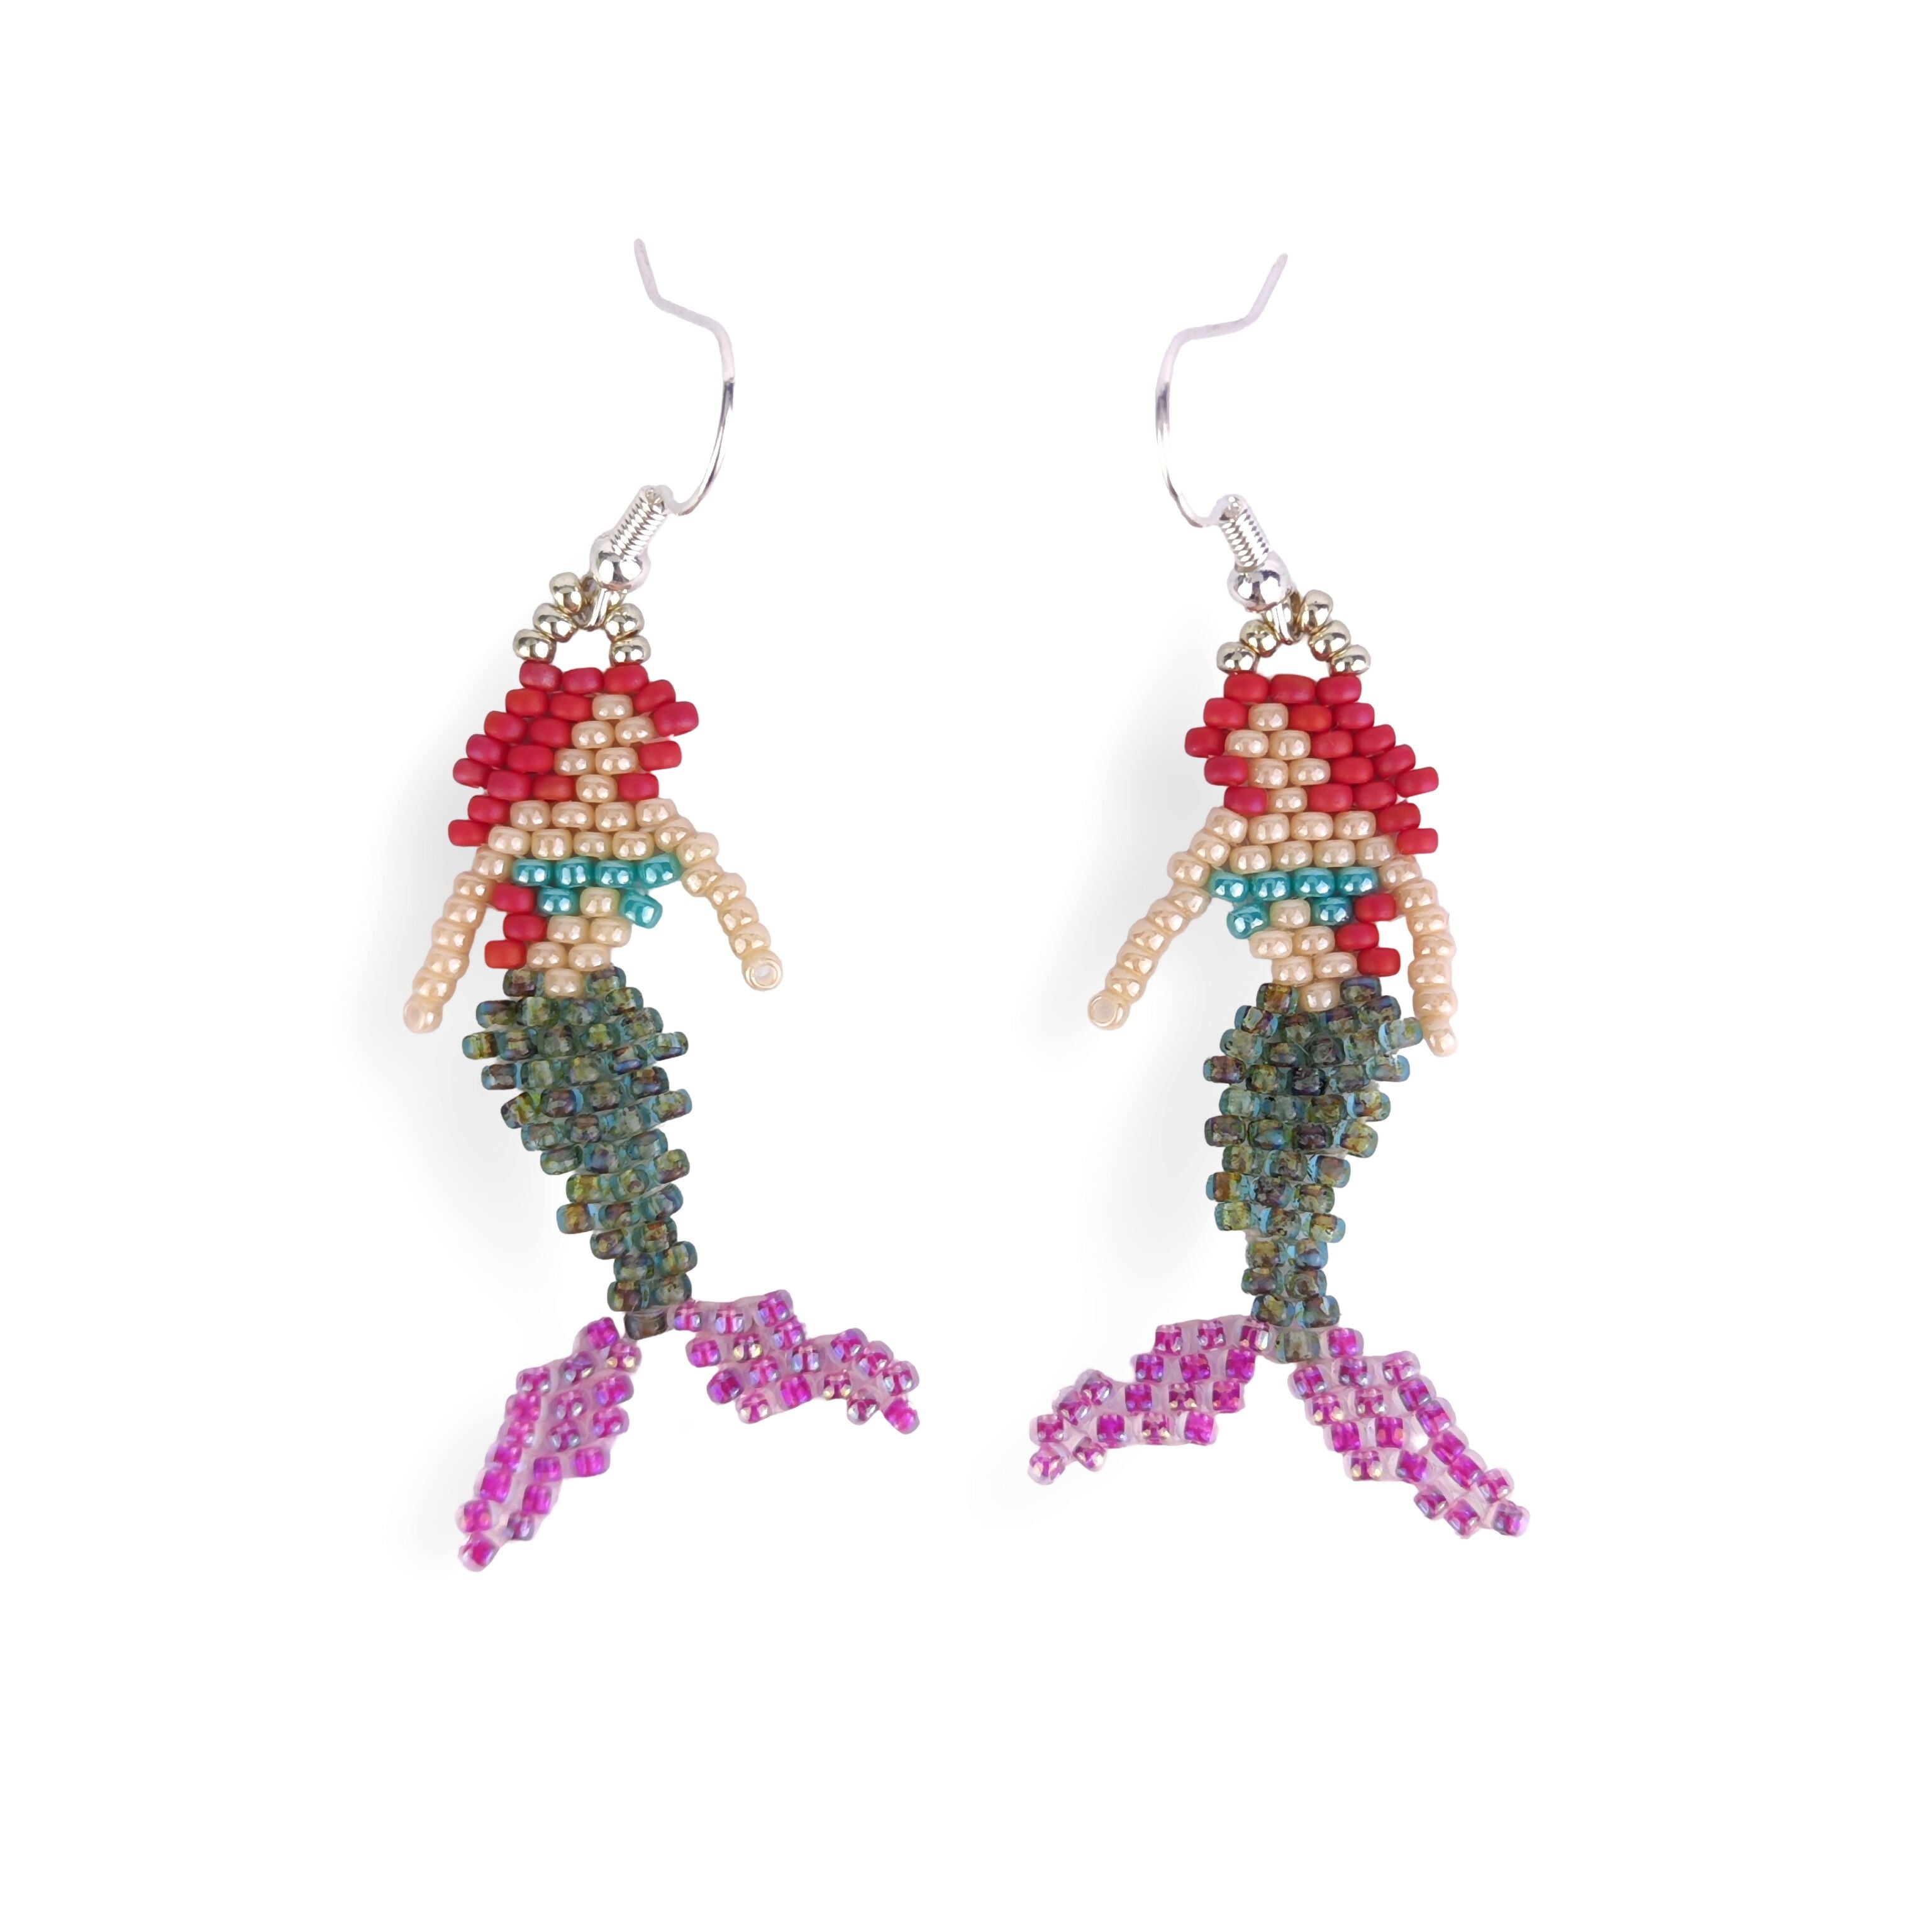 Handwoven Beaded Dangle Earrings - The Little Mermaid, Ariel